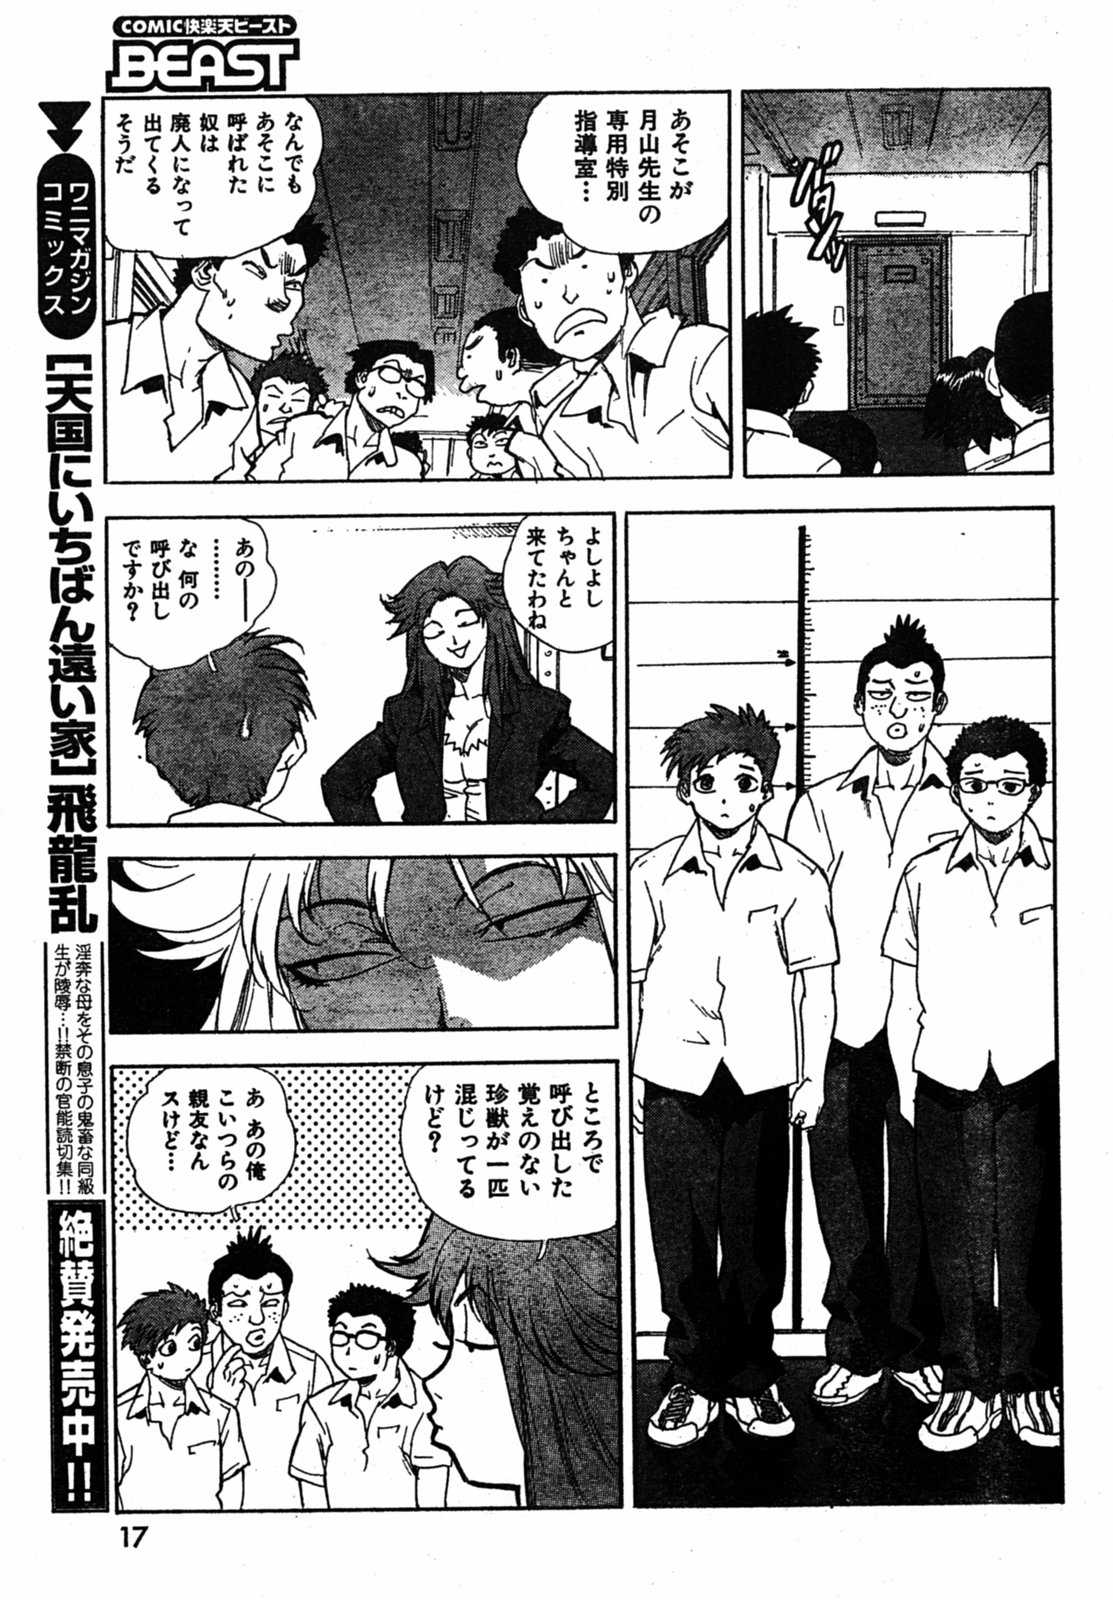 [2005.08.15]Comic Kairakuten Beast Volume 3 